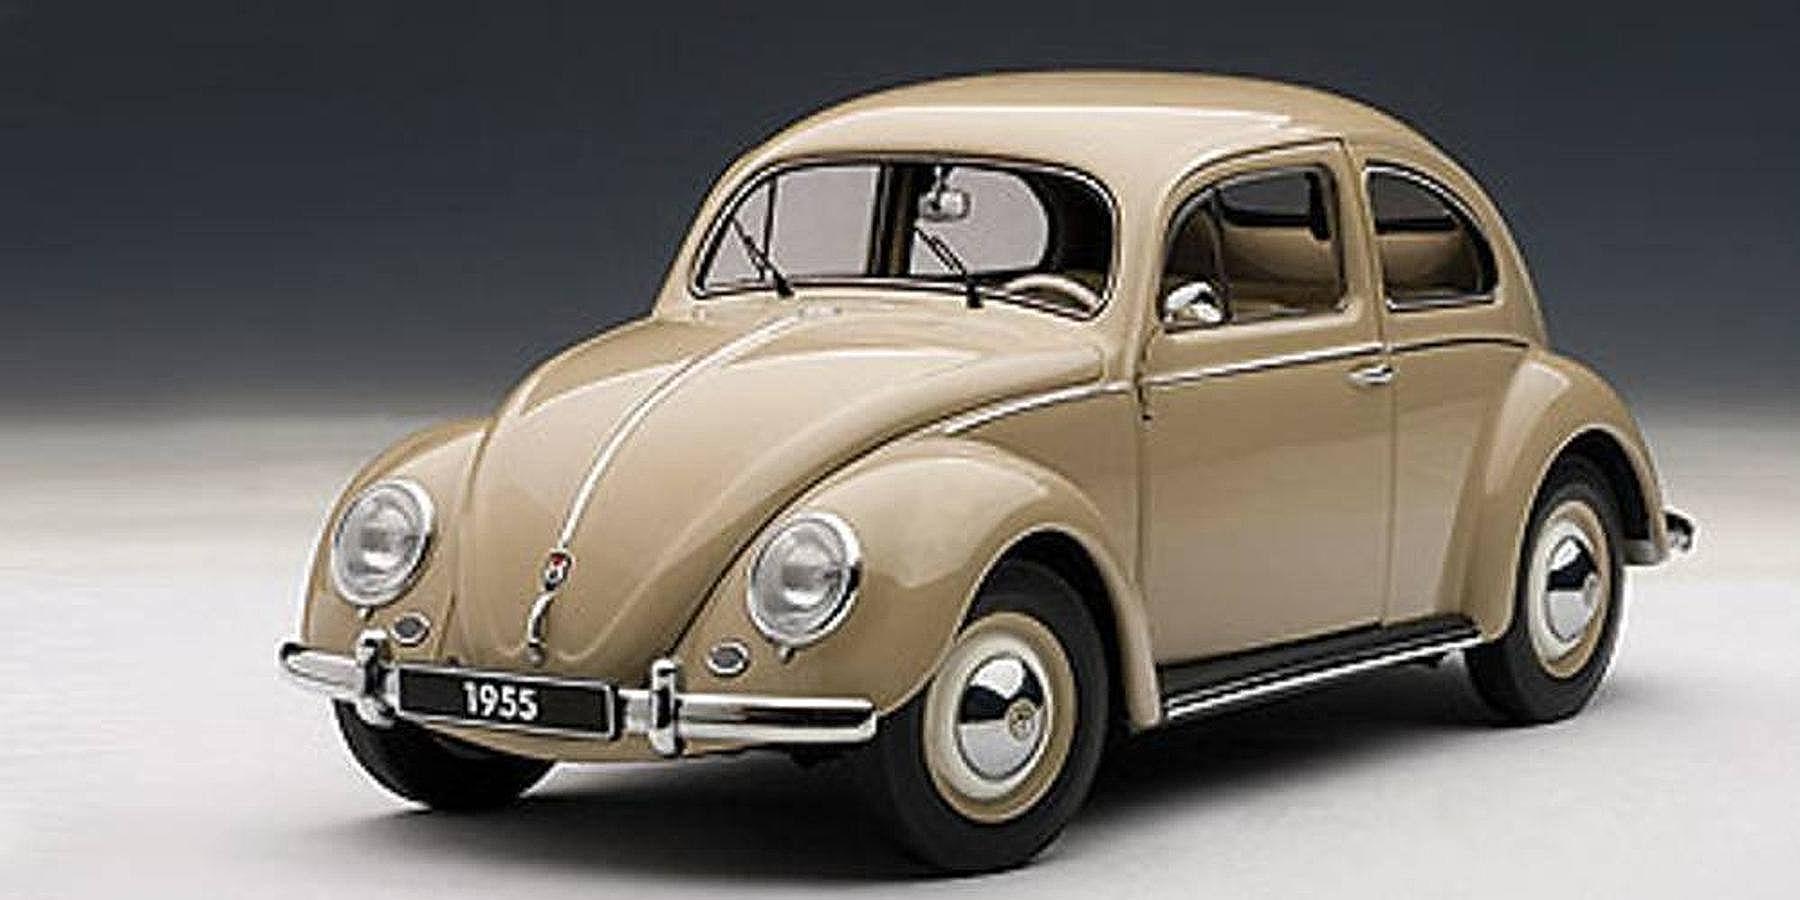 Beetle de 1955, una versión más lujosa exportada a los EE.UU.